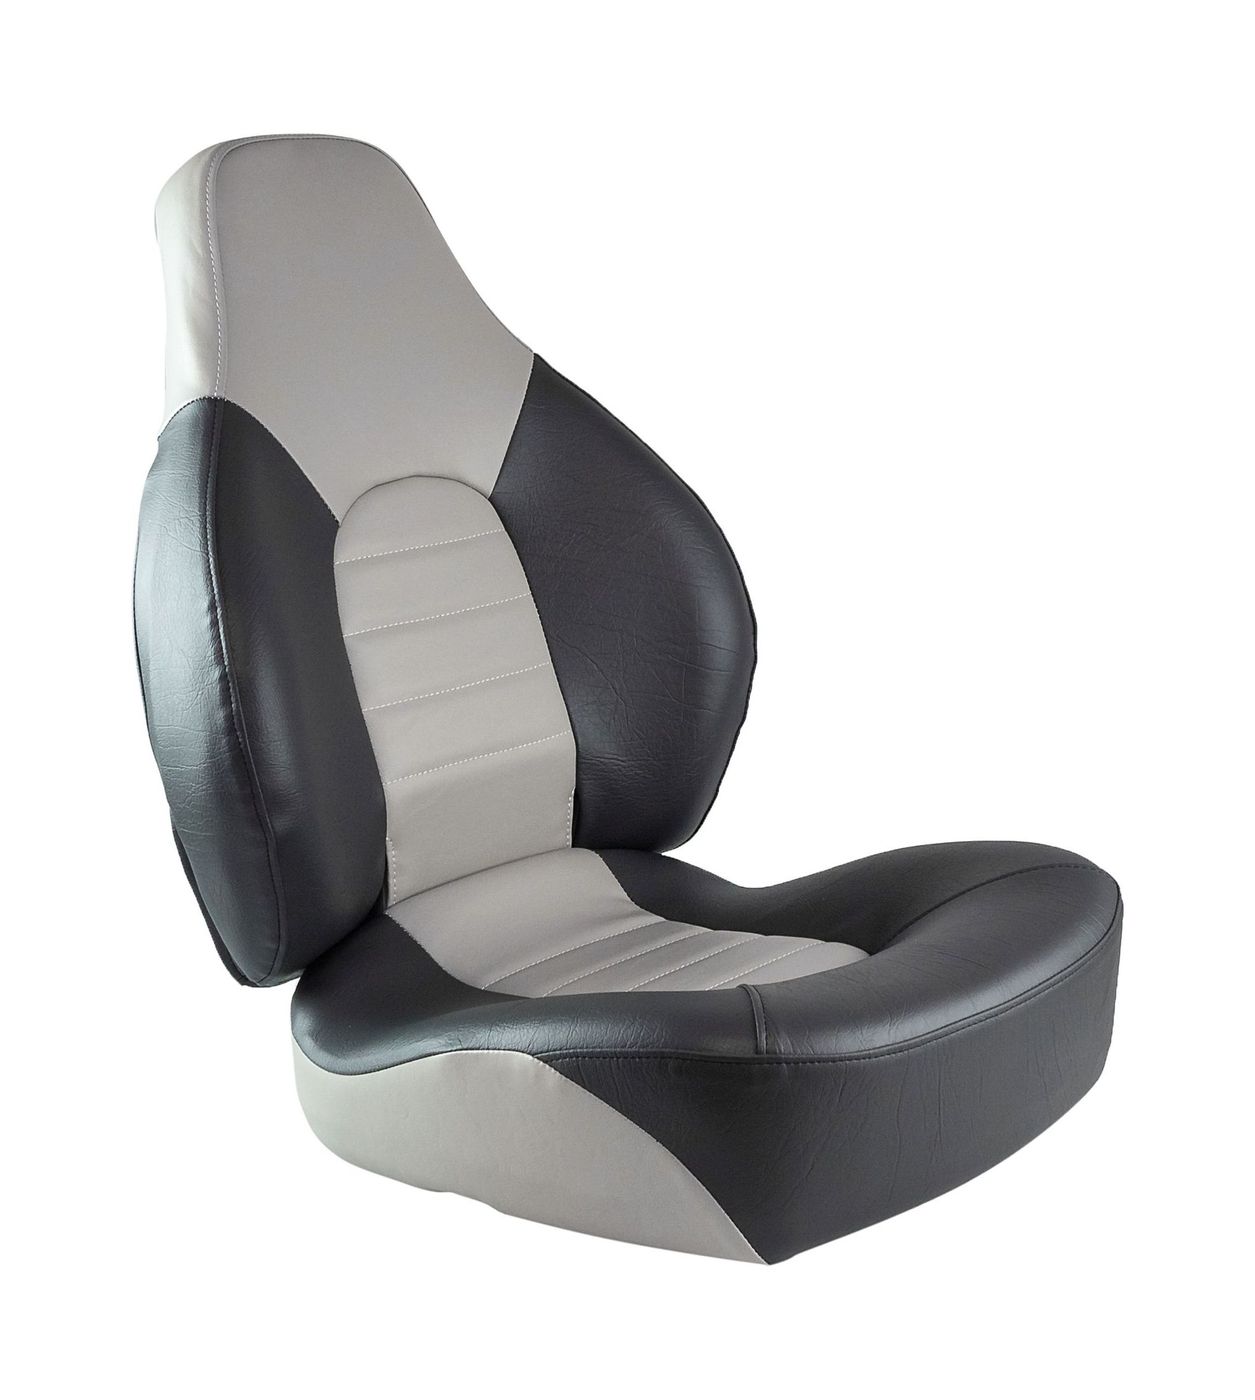 Кресло складное мягкое FISH PRO, серый/темно-серый 1041633 кресло ozark мягкое темно серый 1043224